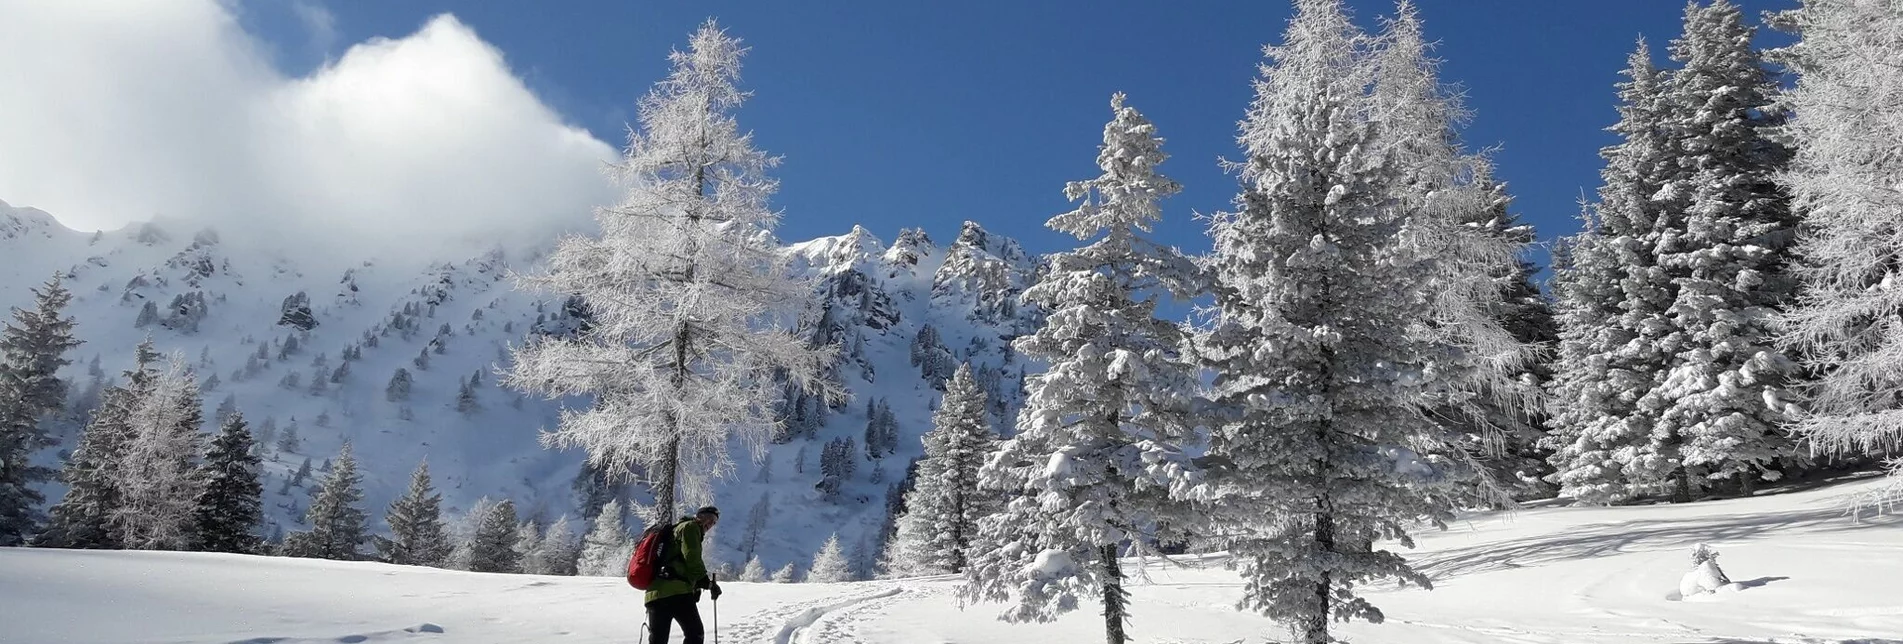 Skitour Sonntagskogel, auch von Montag bis Samstag eine lässige Tour! - Touren-Impression #1 | © Erlebnisregion Murtal